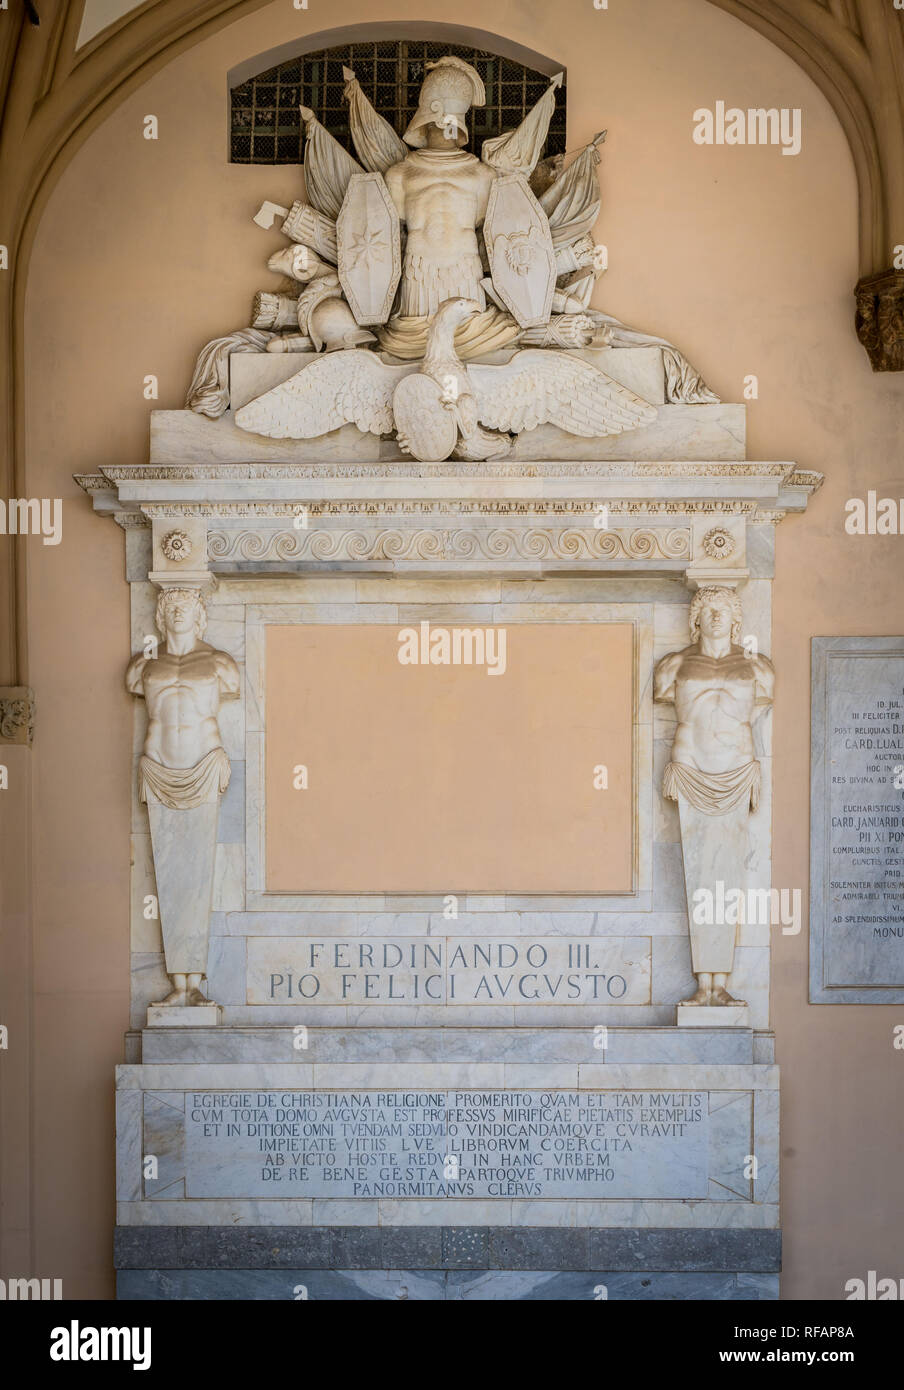 Bas-relief avec le couronnement de Ferdinand III dans le portique de la cathédrale de Palerme. Sicile, Italie, Banque D'Images